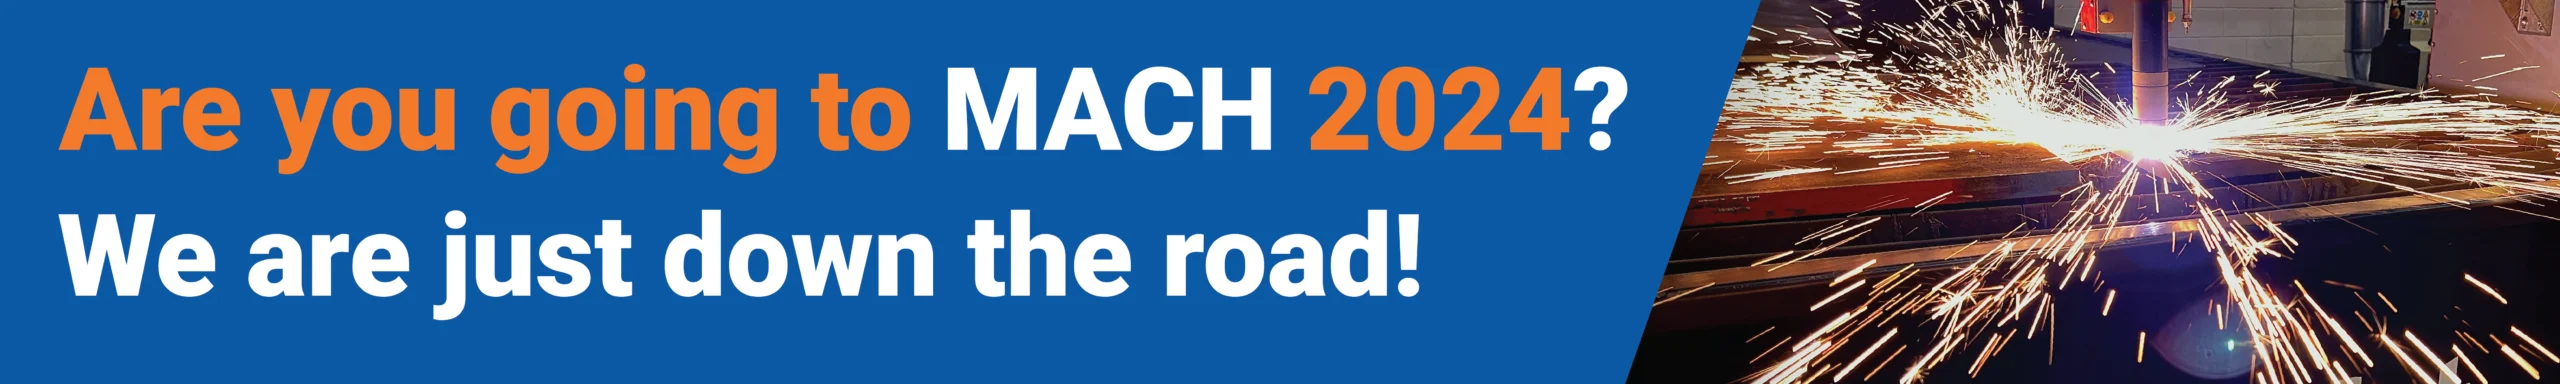 U bezoekt MACH 2024 banner